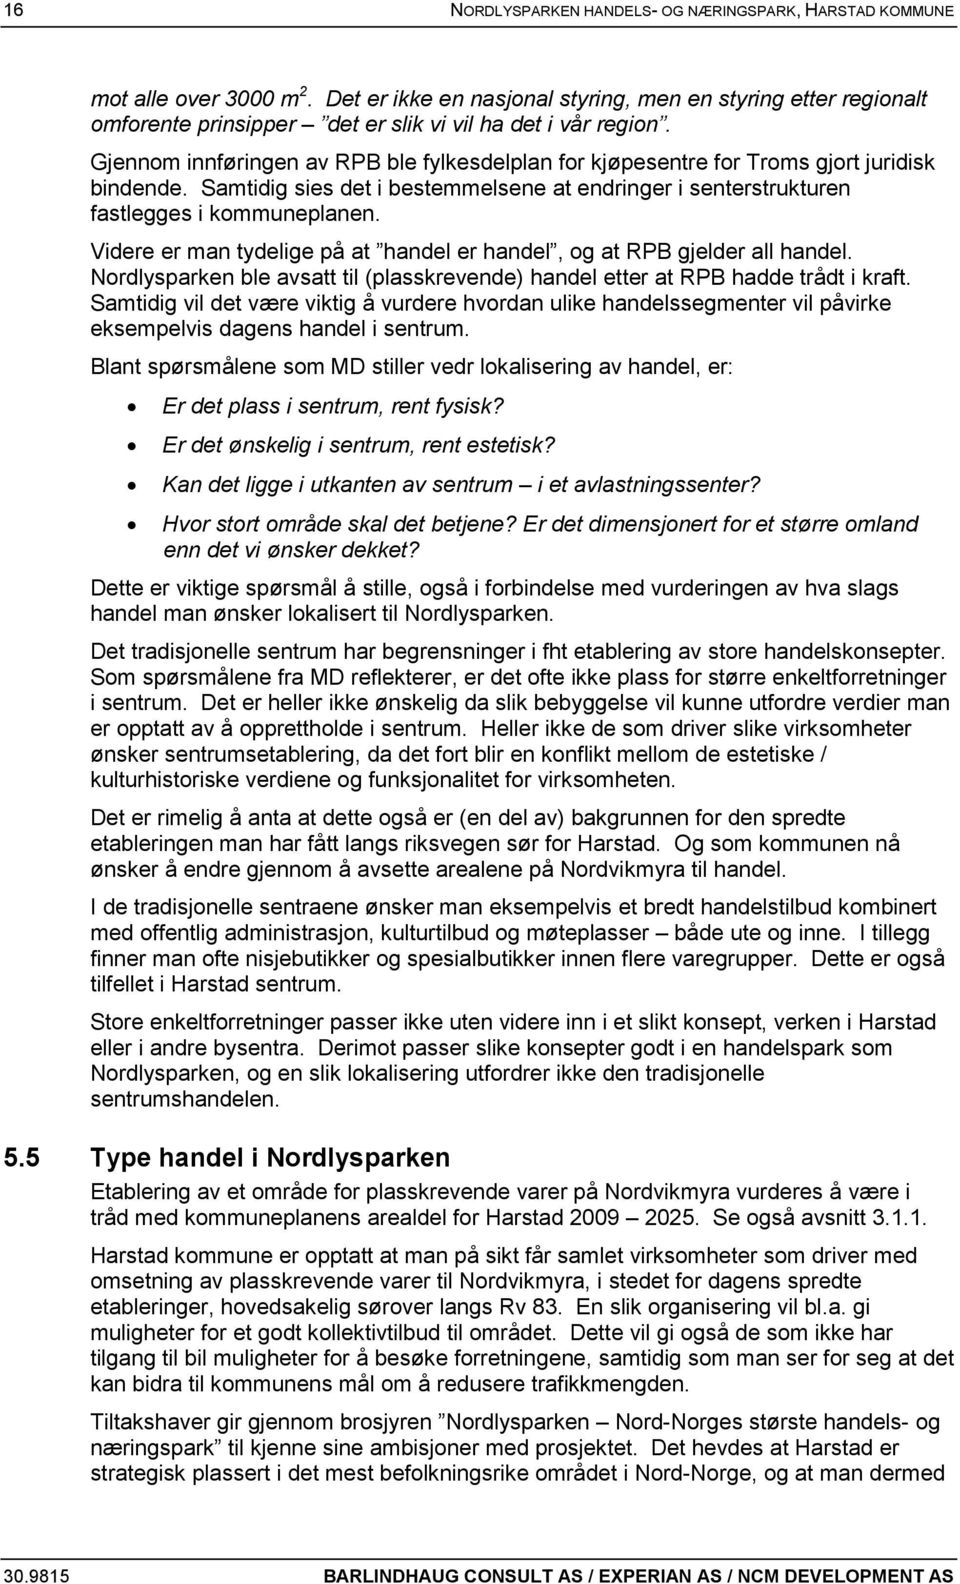 Gjennom innføringen av RPB ble fylkesdelplan for kjøpesentre for Troms gjort juridisk bindende. Samtidig sies det i bestemmelsene at endringer i senterstrukturen fastlegges i kommuneplanen.